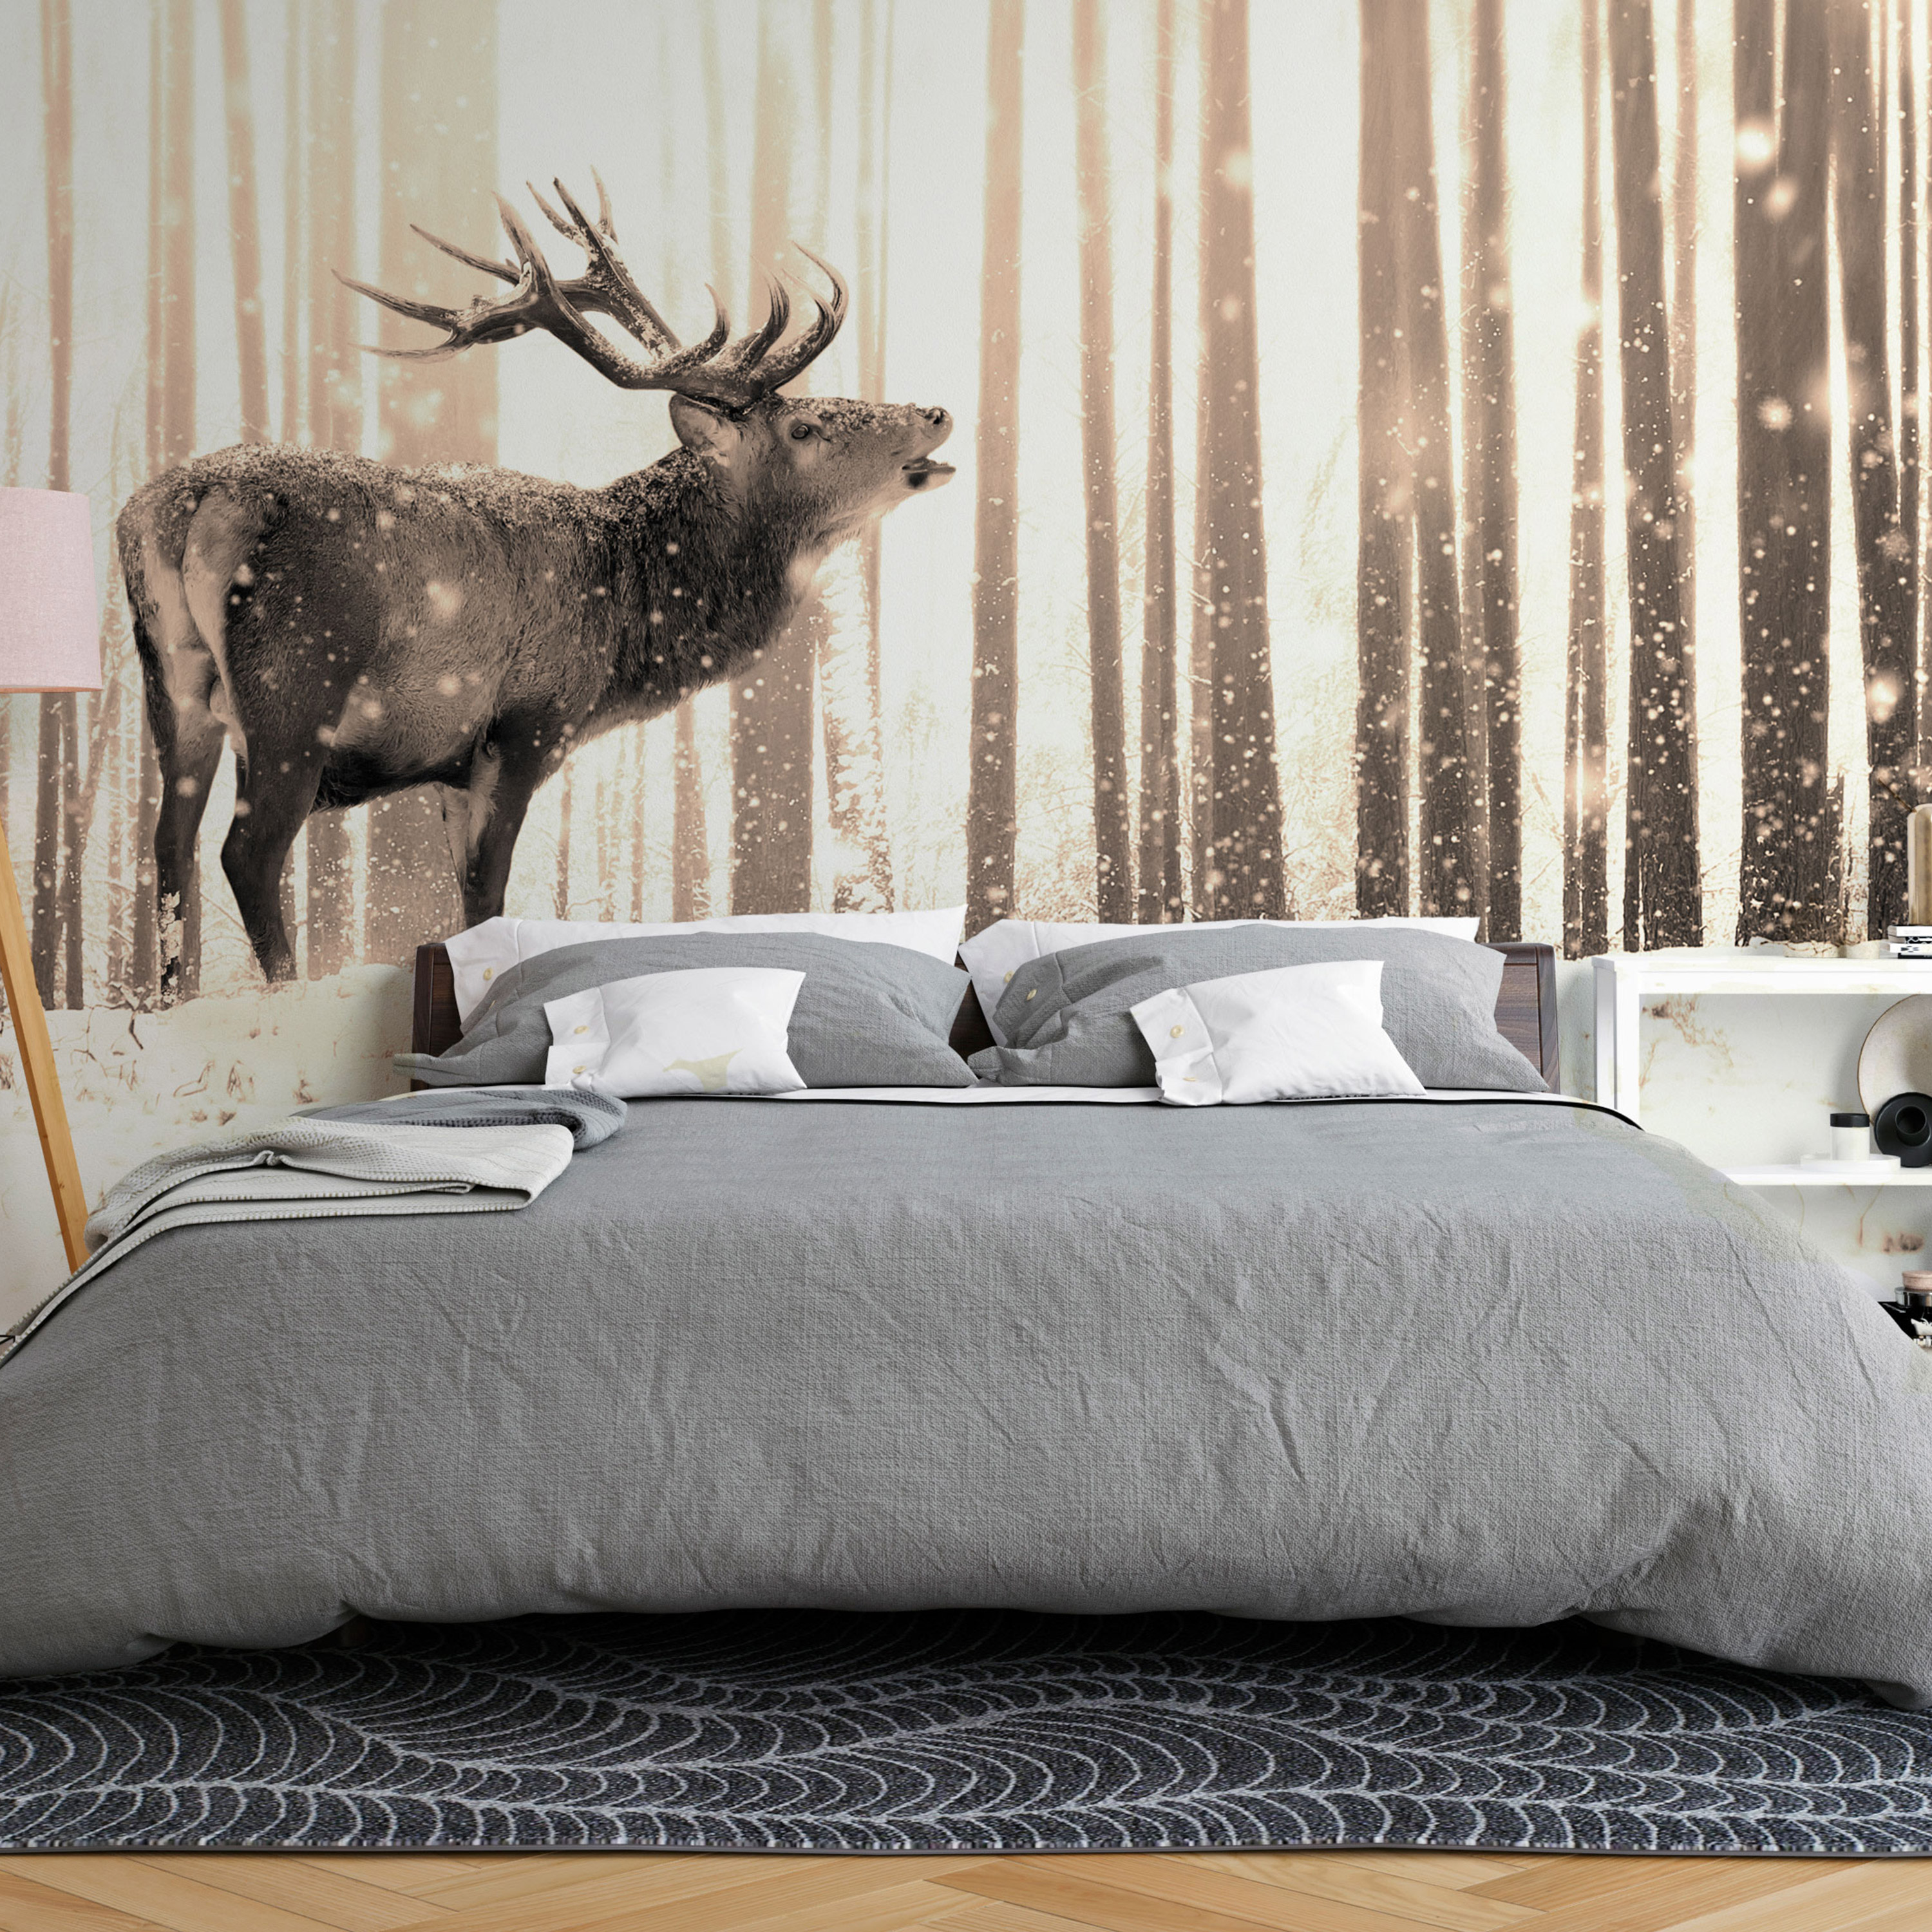 Self-adhesive Wallpaper - Deer in the Snow (Sepia) - 98x70